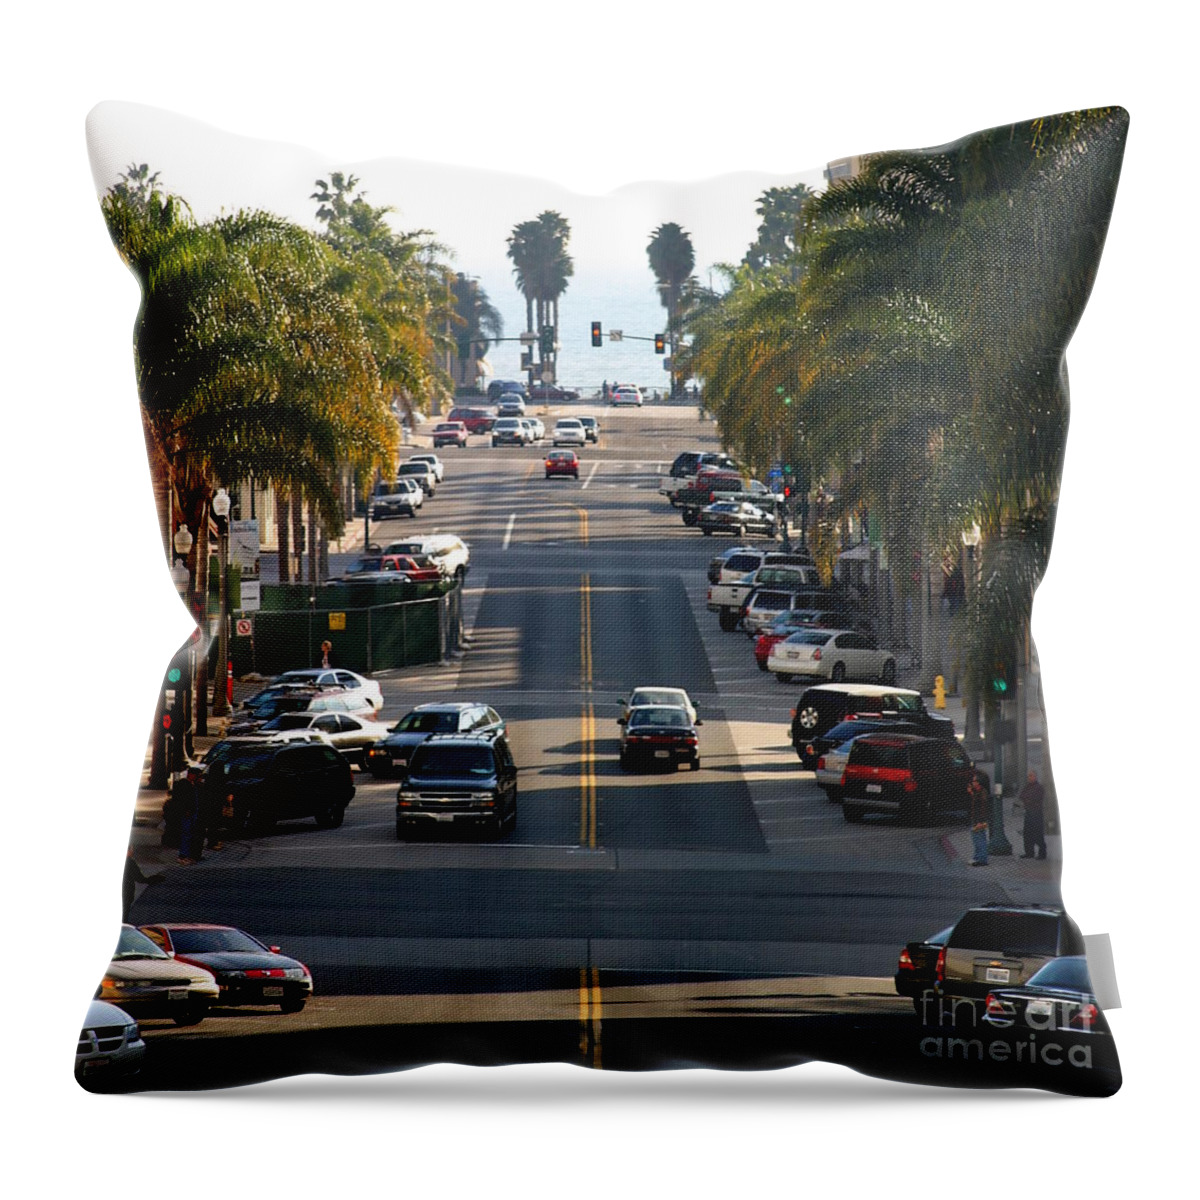 Ventura Throw Pillow featuring the photograph California Street by Henrik Lehnerer